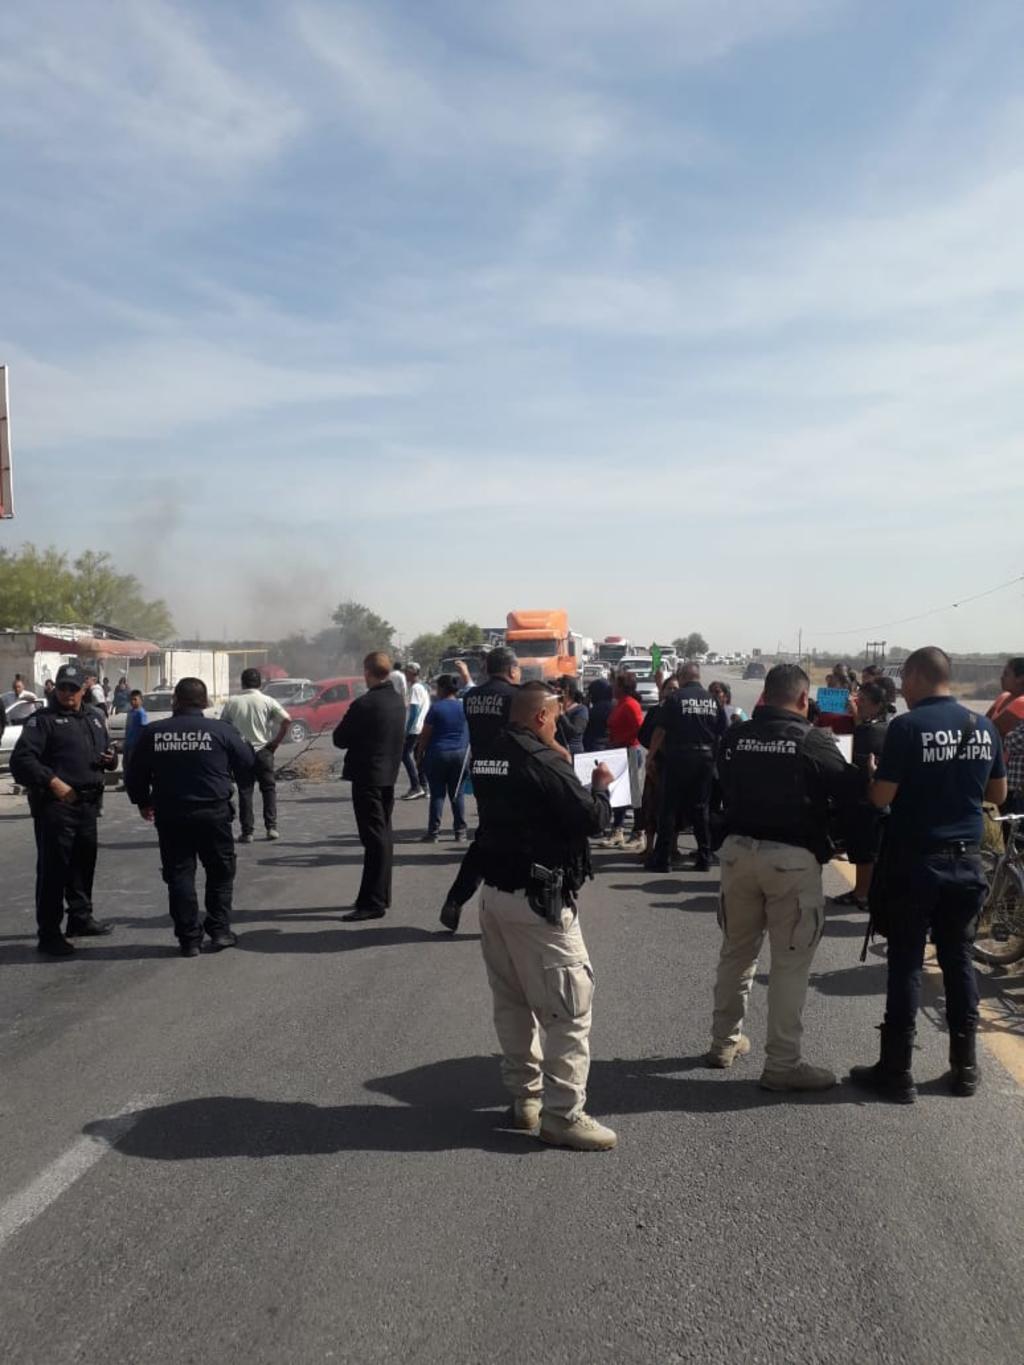 Al lugar acudieron elementos de Seguridad Pública, Fuerza Coahuila y la Fiscalía General de Justicia, quienes dialogaron con los manifestantes para el retiro del bloqueo. (EL SIGLO DE TORREÓN) 

